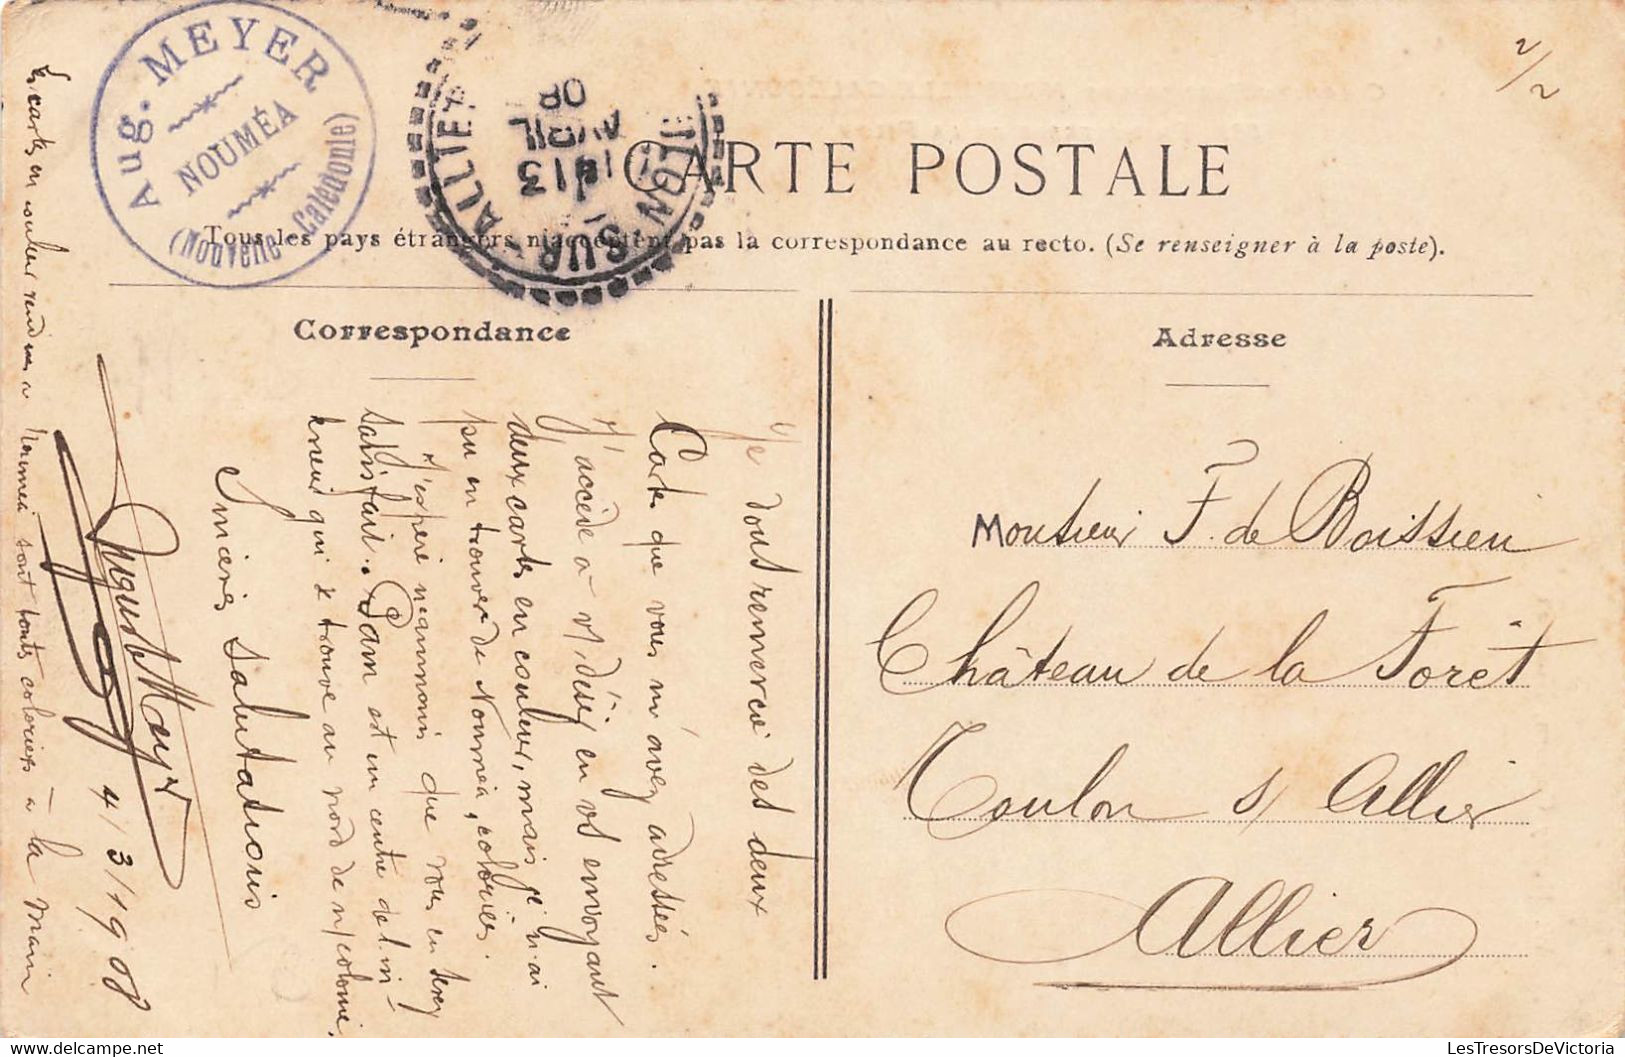 CPA NOUVELLE CALEDONIE - Briqueterie De La Pilou - Henry Caporn - Colorisé - Rare - 1908 - New Caledonia